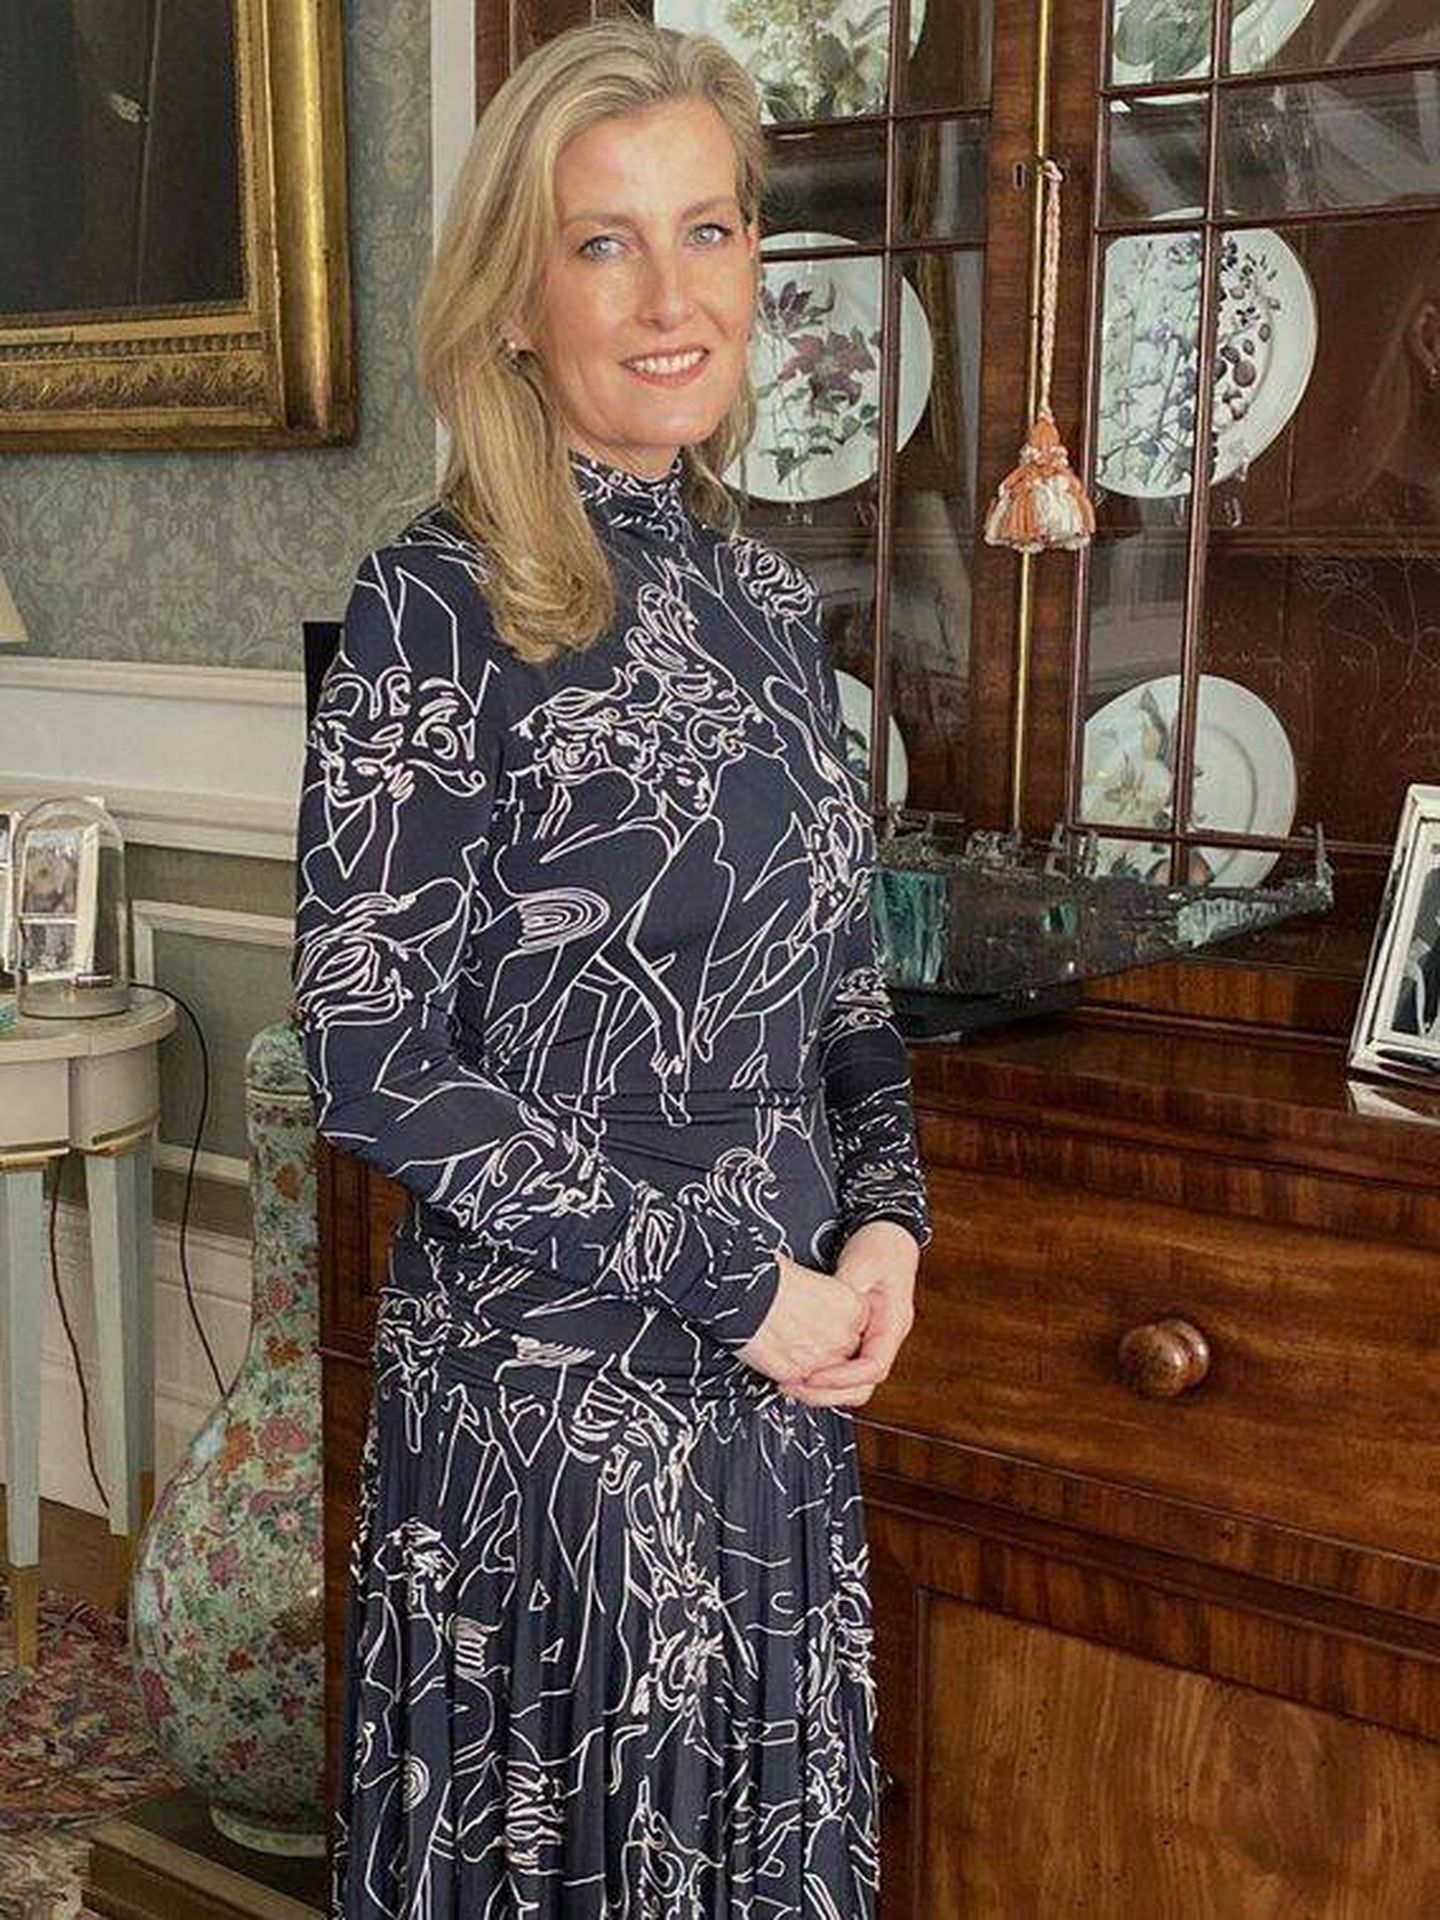 Sophie, en un posado dentro de uno de los salones de su casa, vestida de Victoria Beckham. (Royal Family)